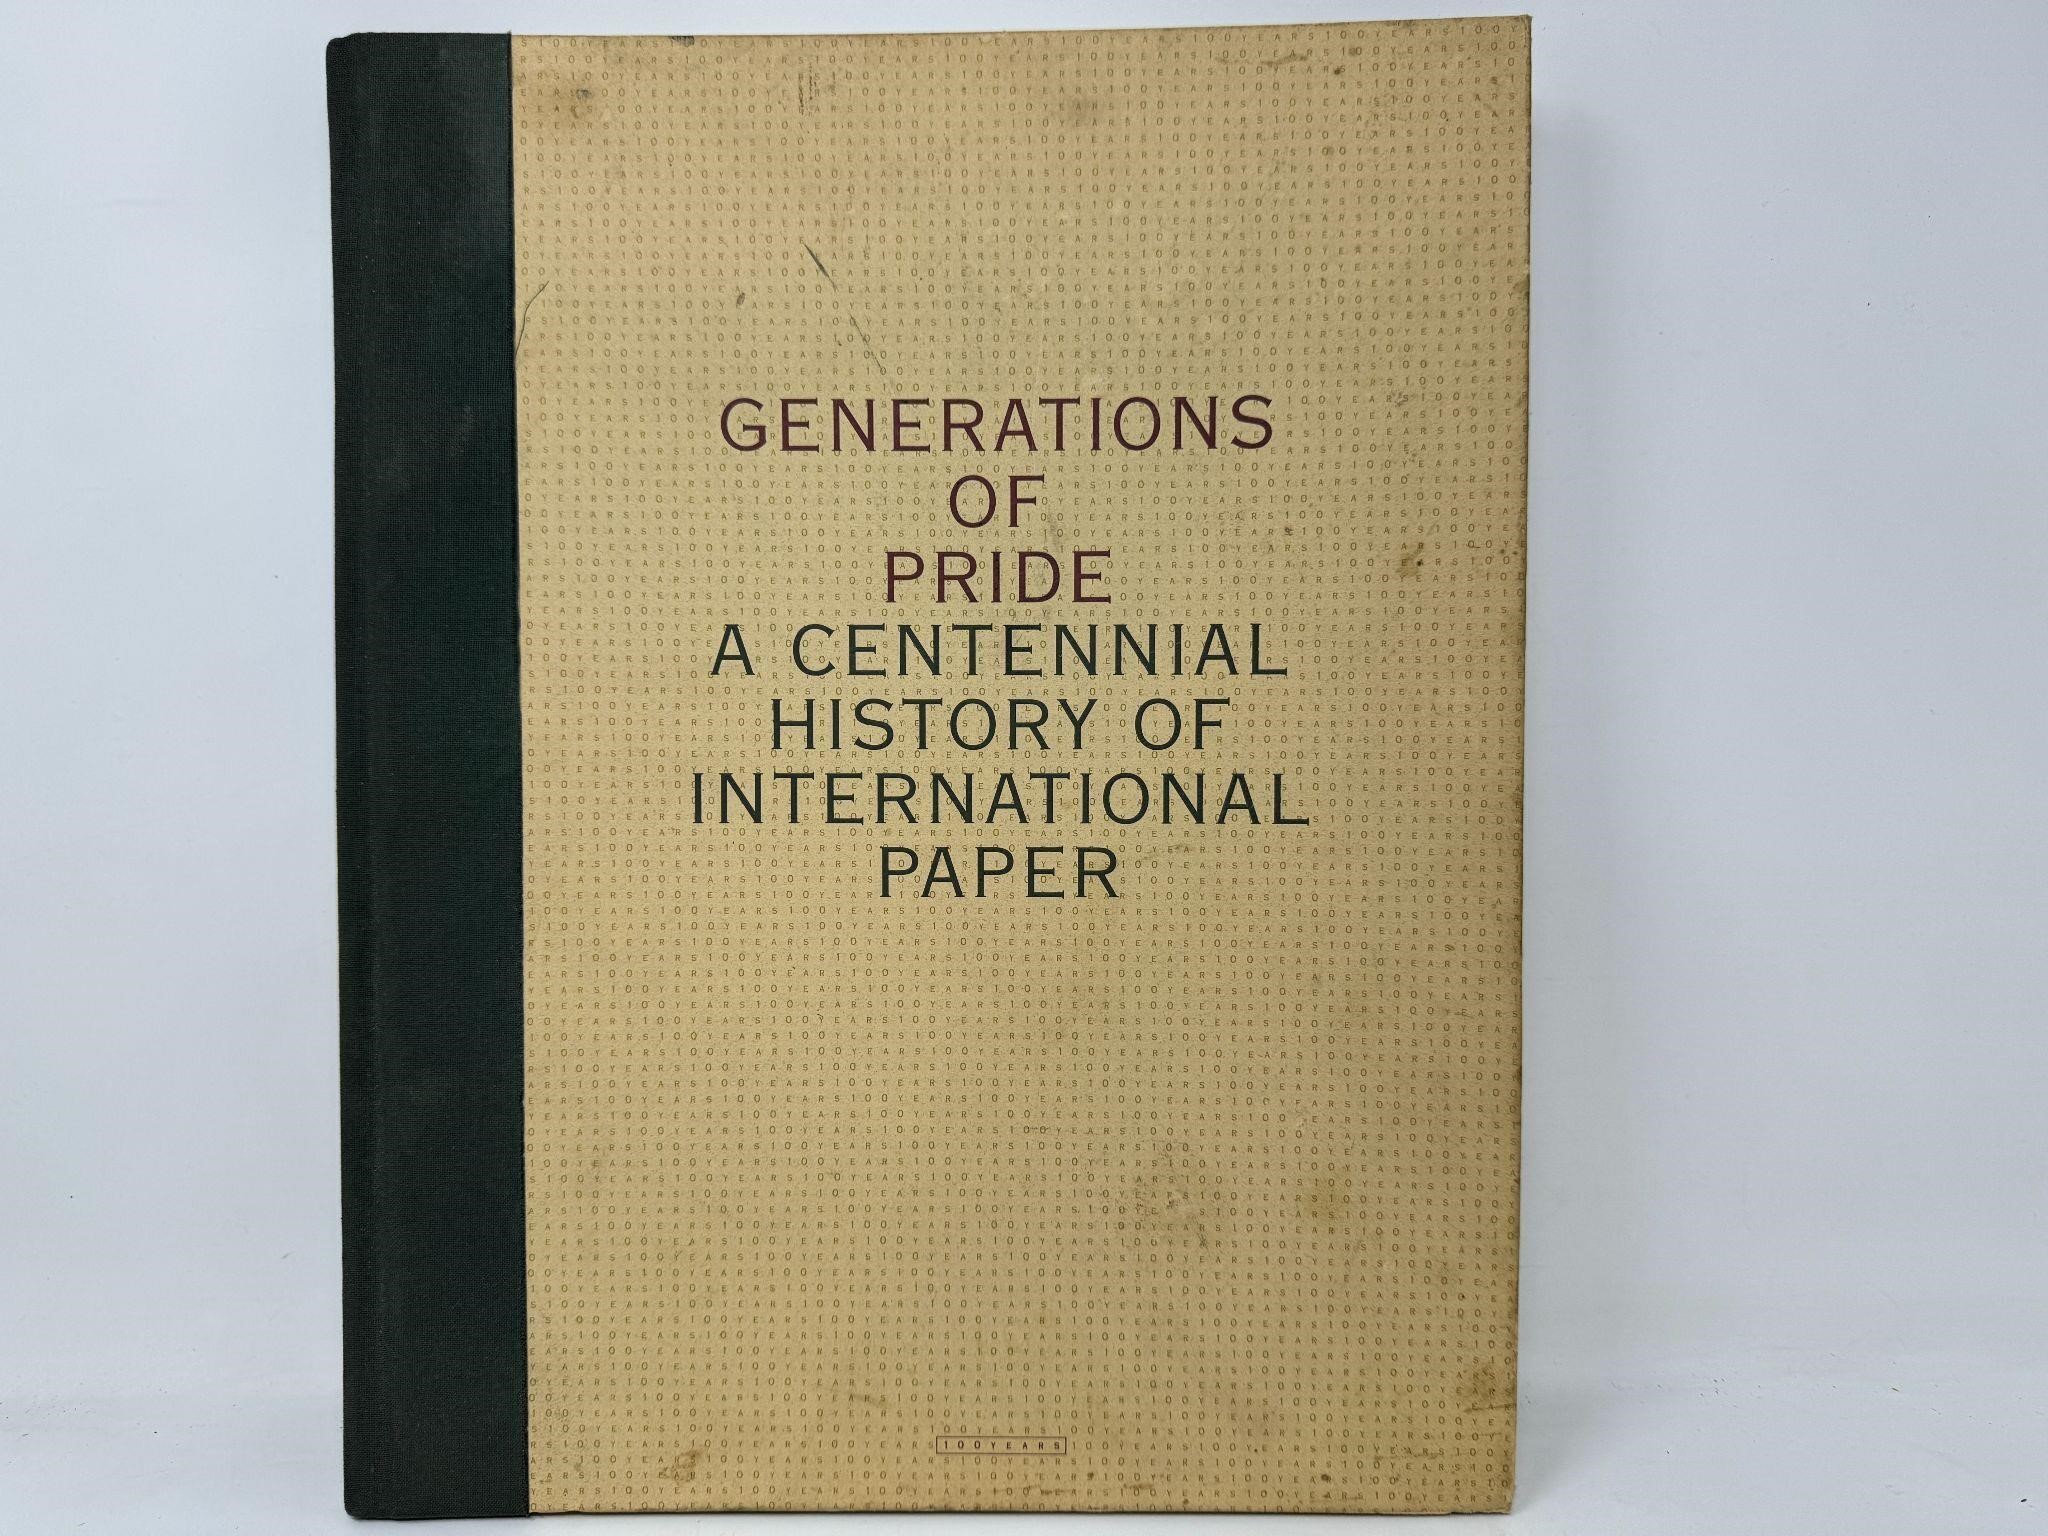 A CENTENNIAL HISTORY OF INTERNATIONAL PAPER BOOK